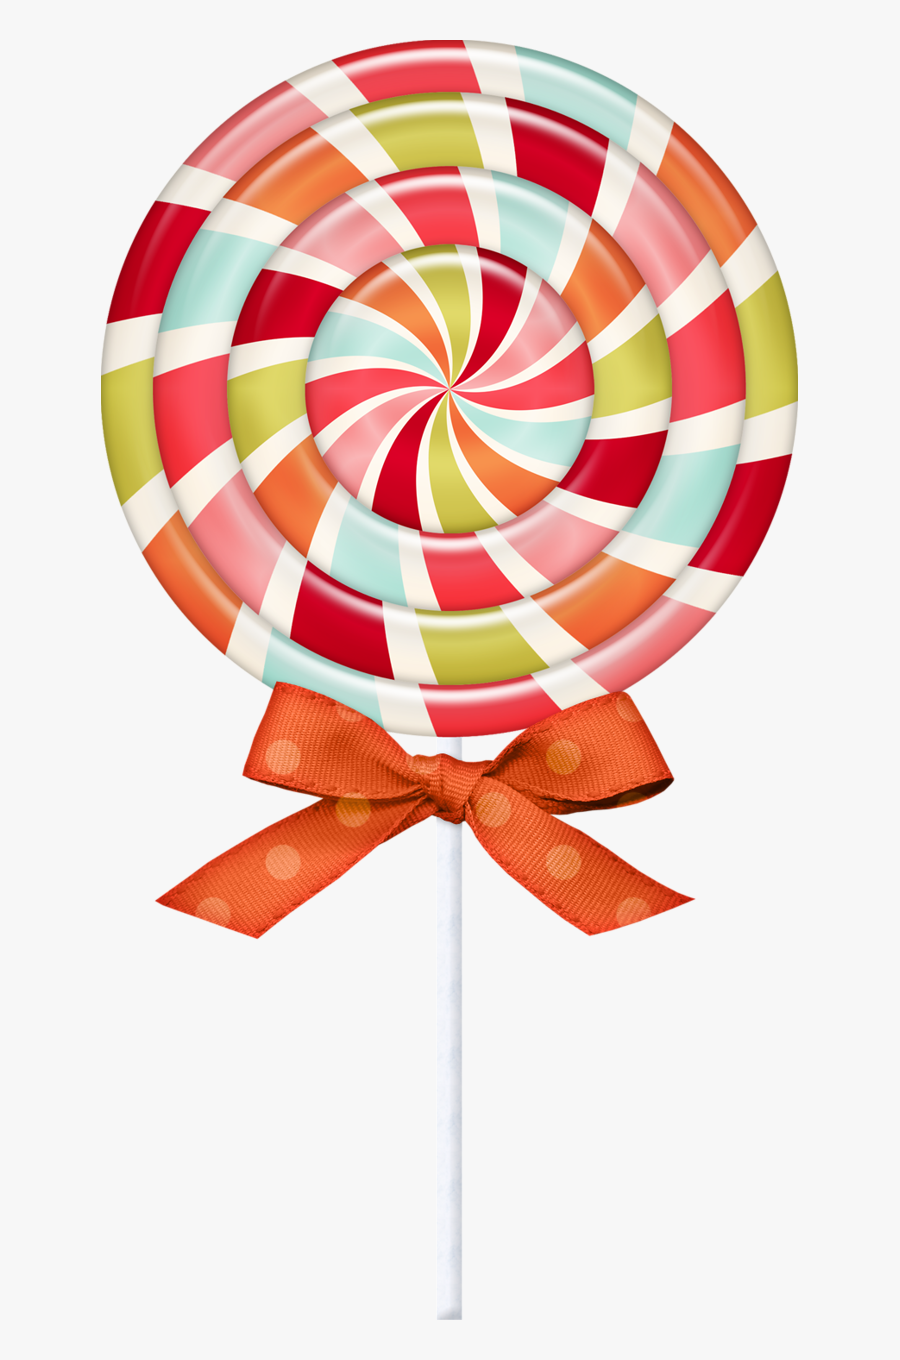 Aslagle Cupidsconfectionary Lollipop Png Pinterest - Portable Network Graphics, Transparent Clipart